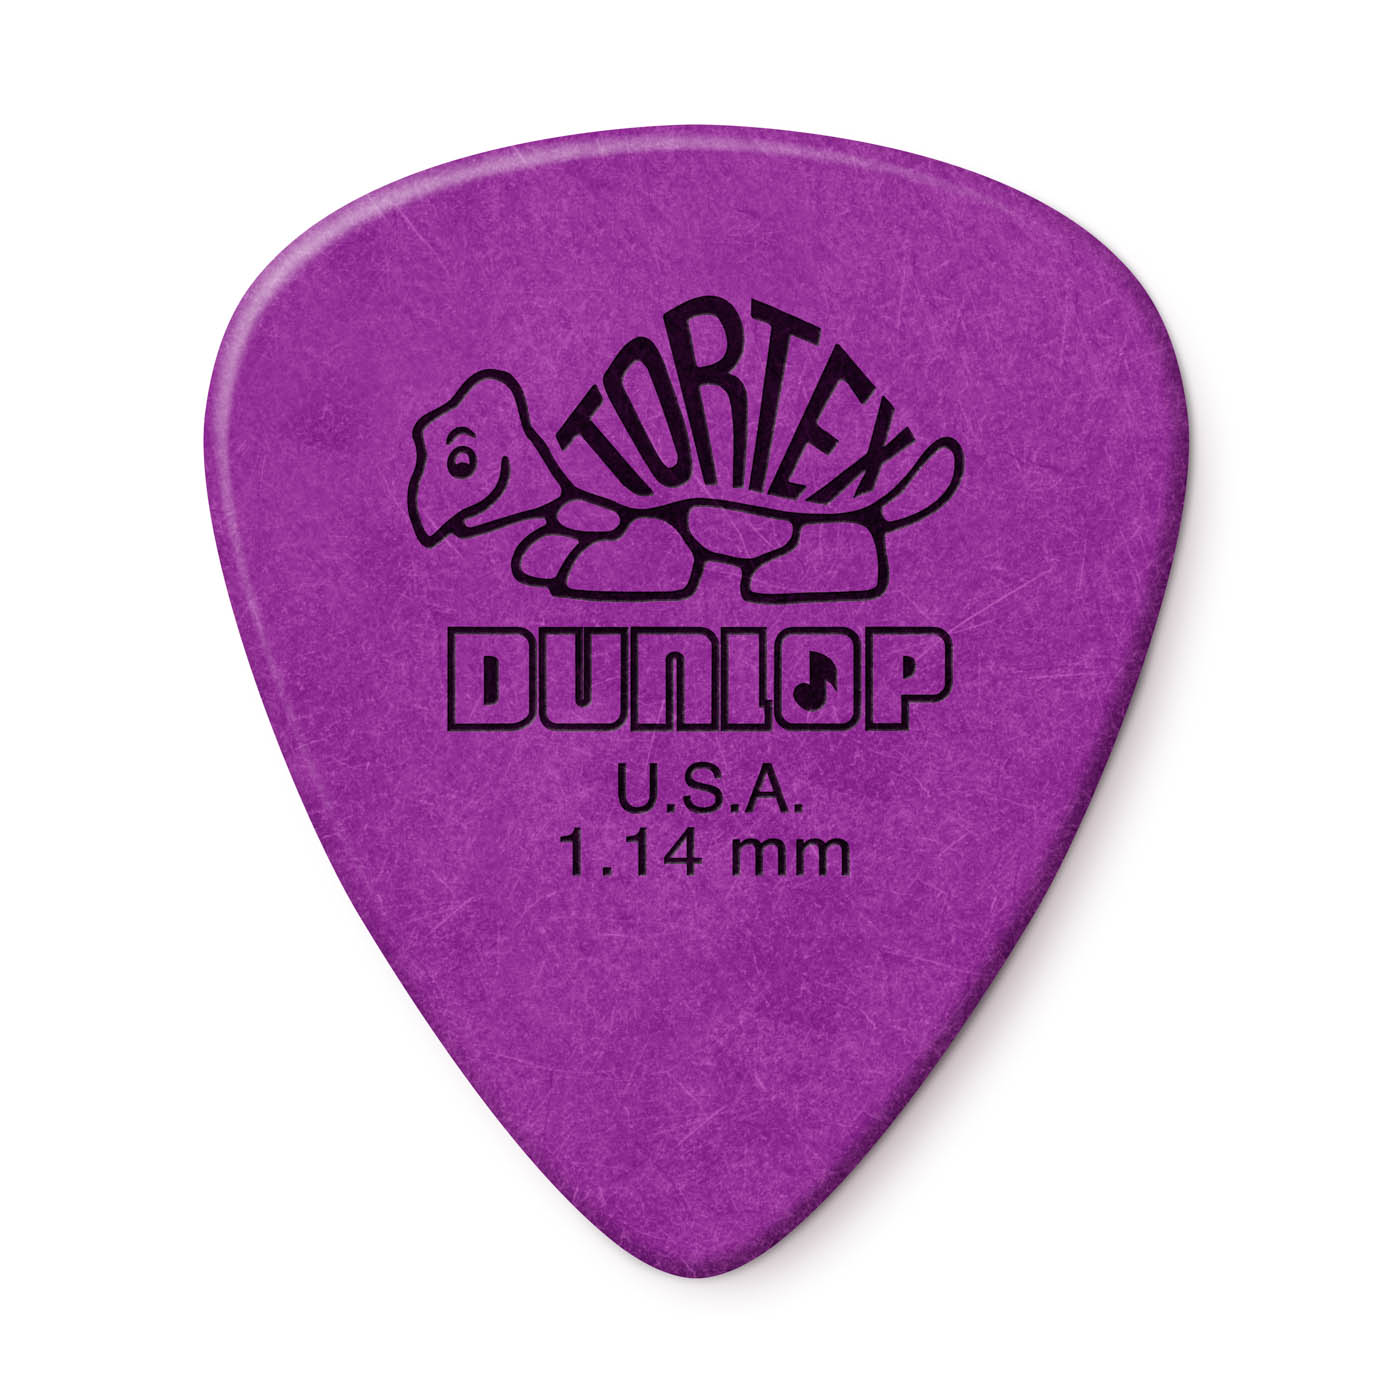 Dunlop Picks - 418 - Tortex Standard